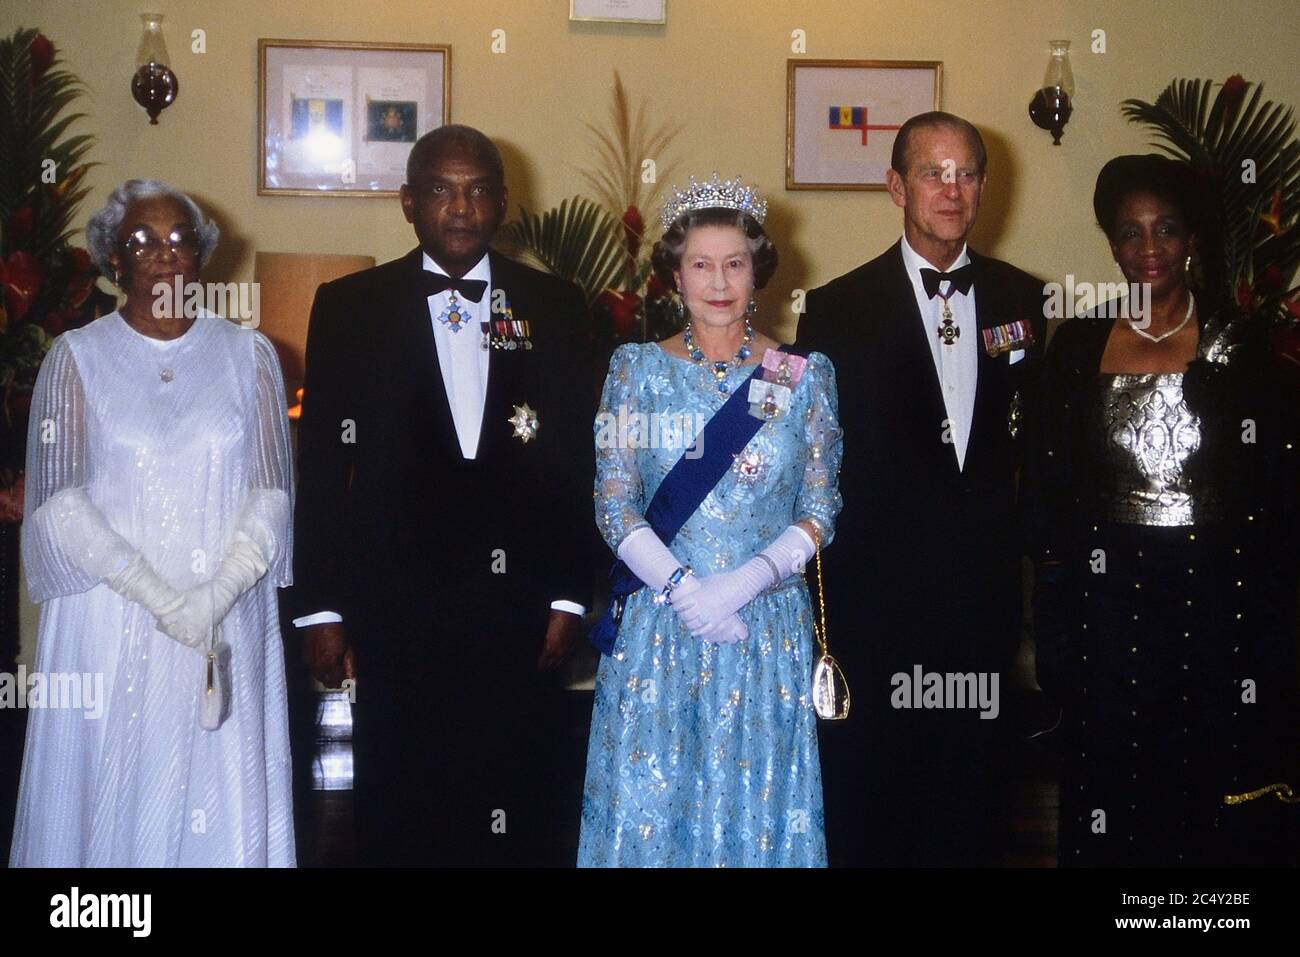 Königin Elizabeth II. Mit dem Herzog von Edinburgh und Sir Hugh Springer, Generalgouverneur von Barbados. Seine Frau Lady Springer und Angelita Sandiford bei einem Staatsanlaß in Barbados. 1989 Stockfoto